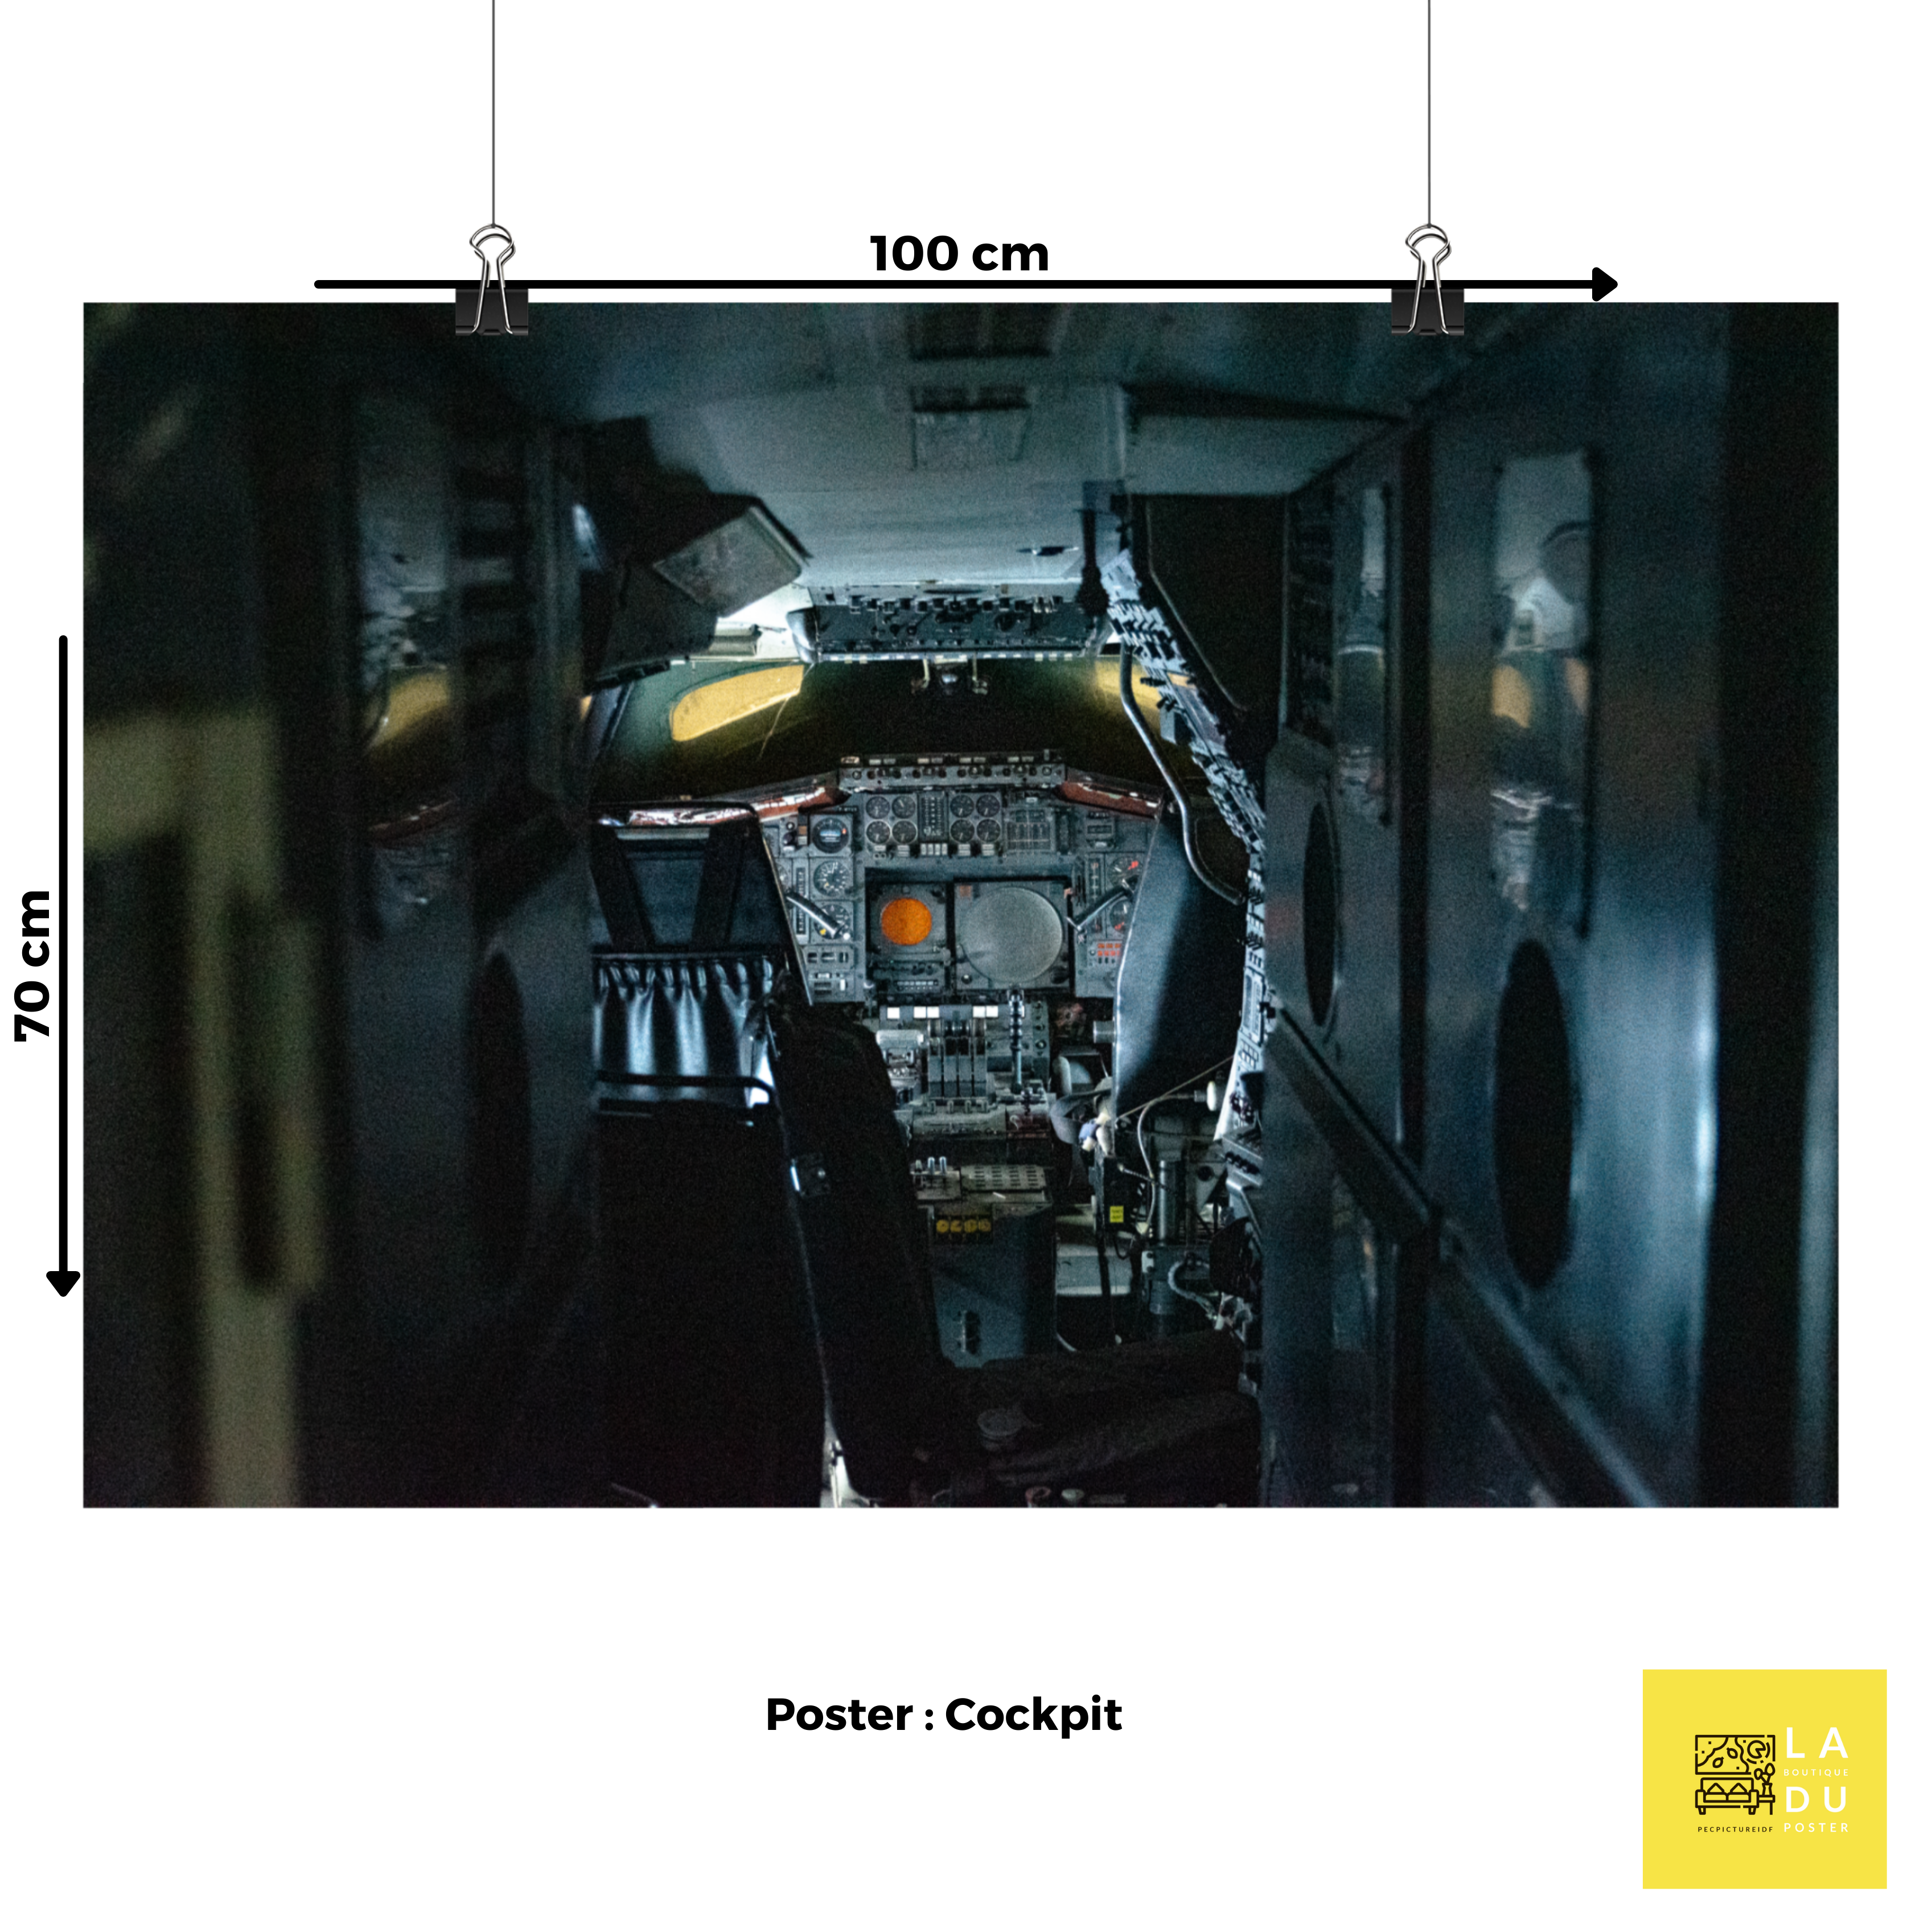 Cockpit d'avion - Poster - La boutique du poster Français